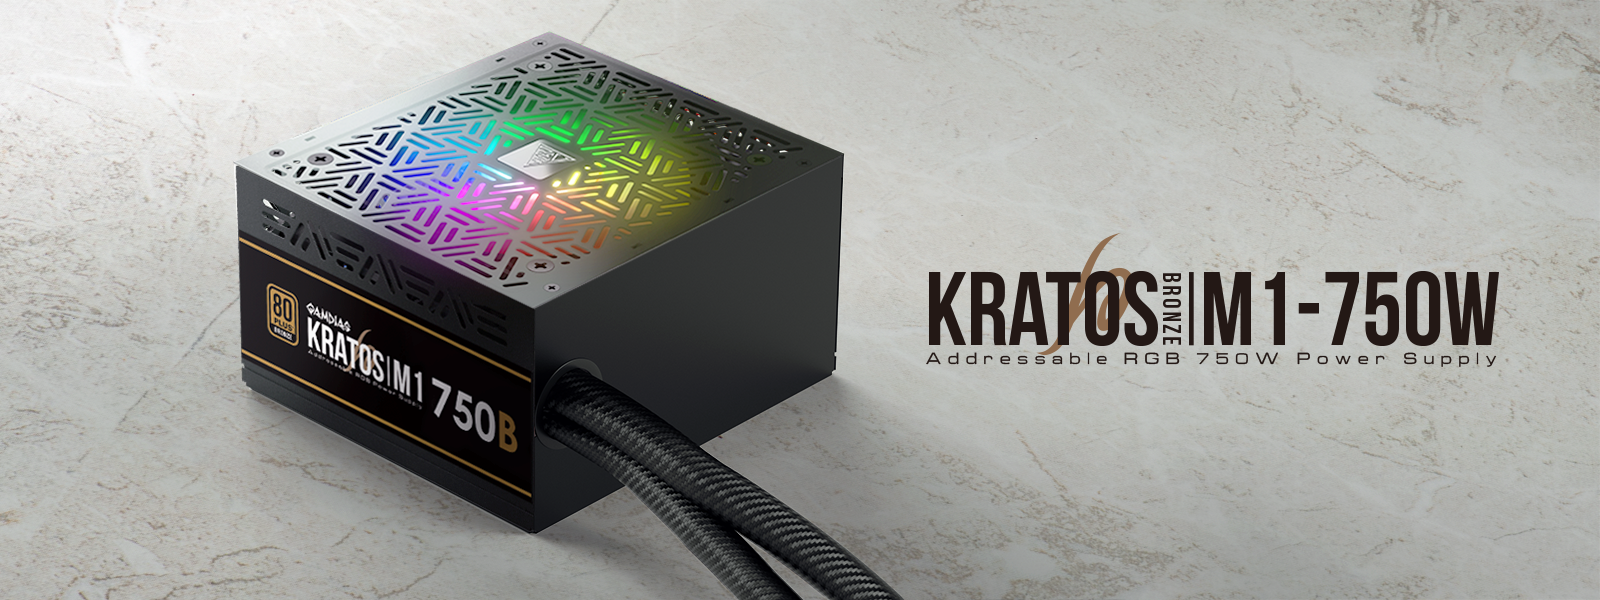 KRATOS P1-750G RGB Power Supply